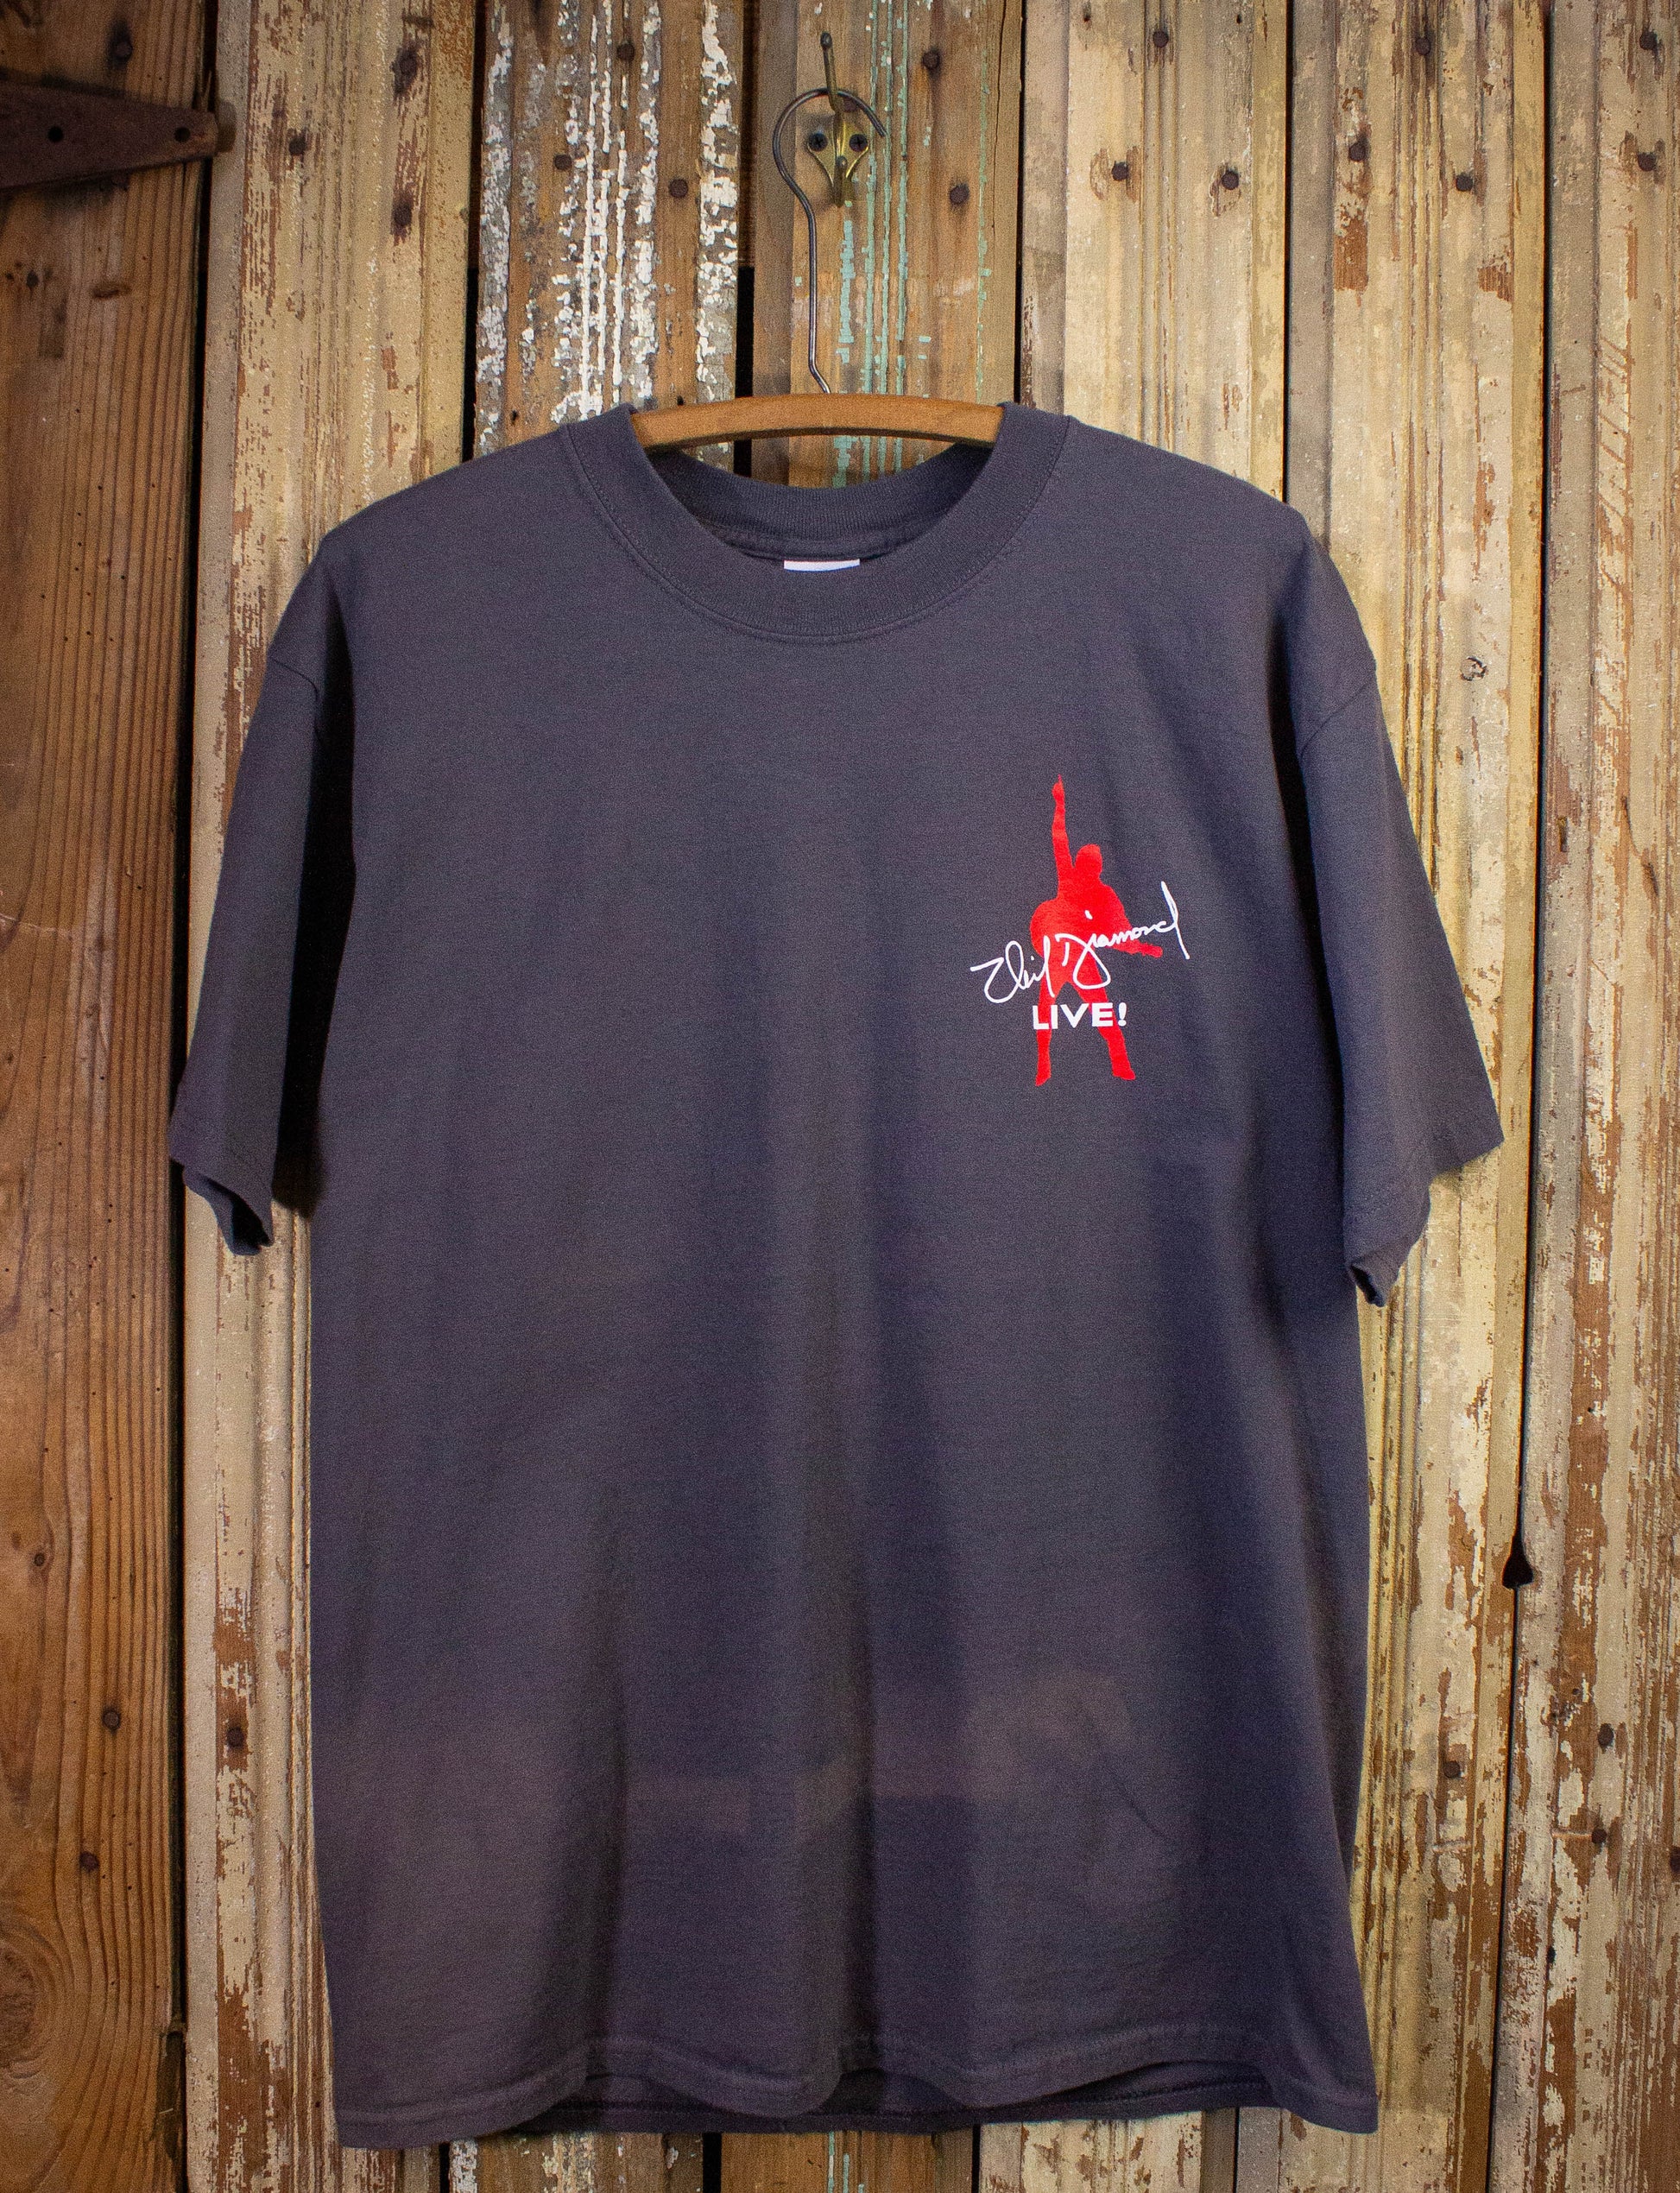 Vintage Neil Diamond Live Concert T Shirt 2001-02 Gray Large